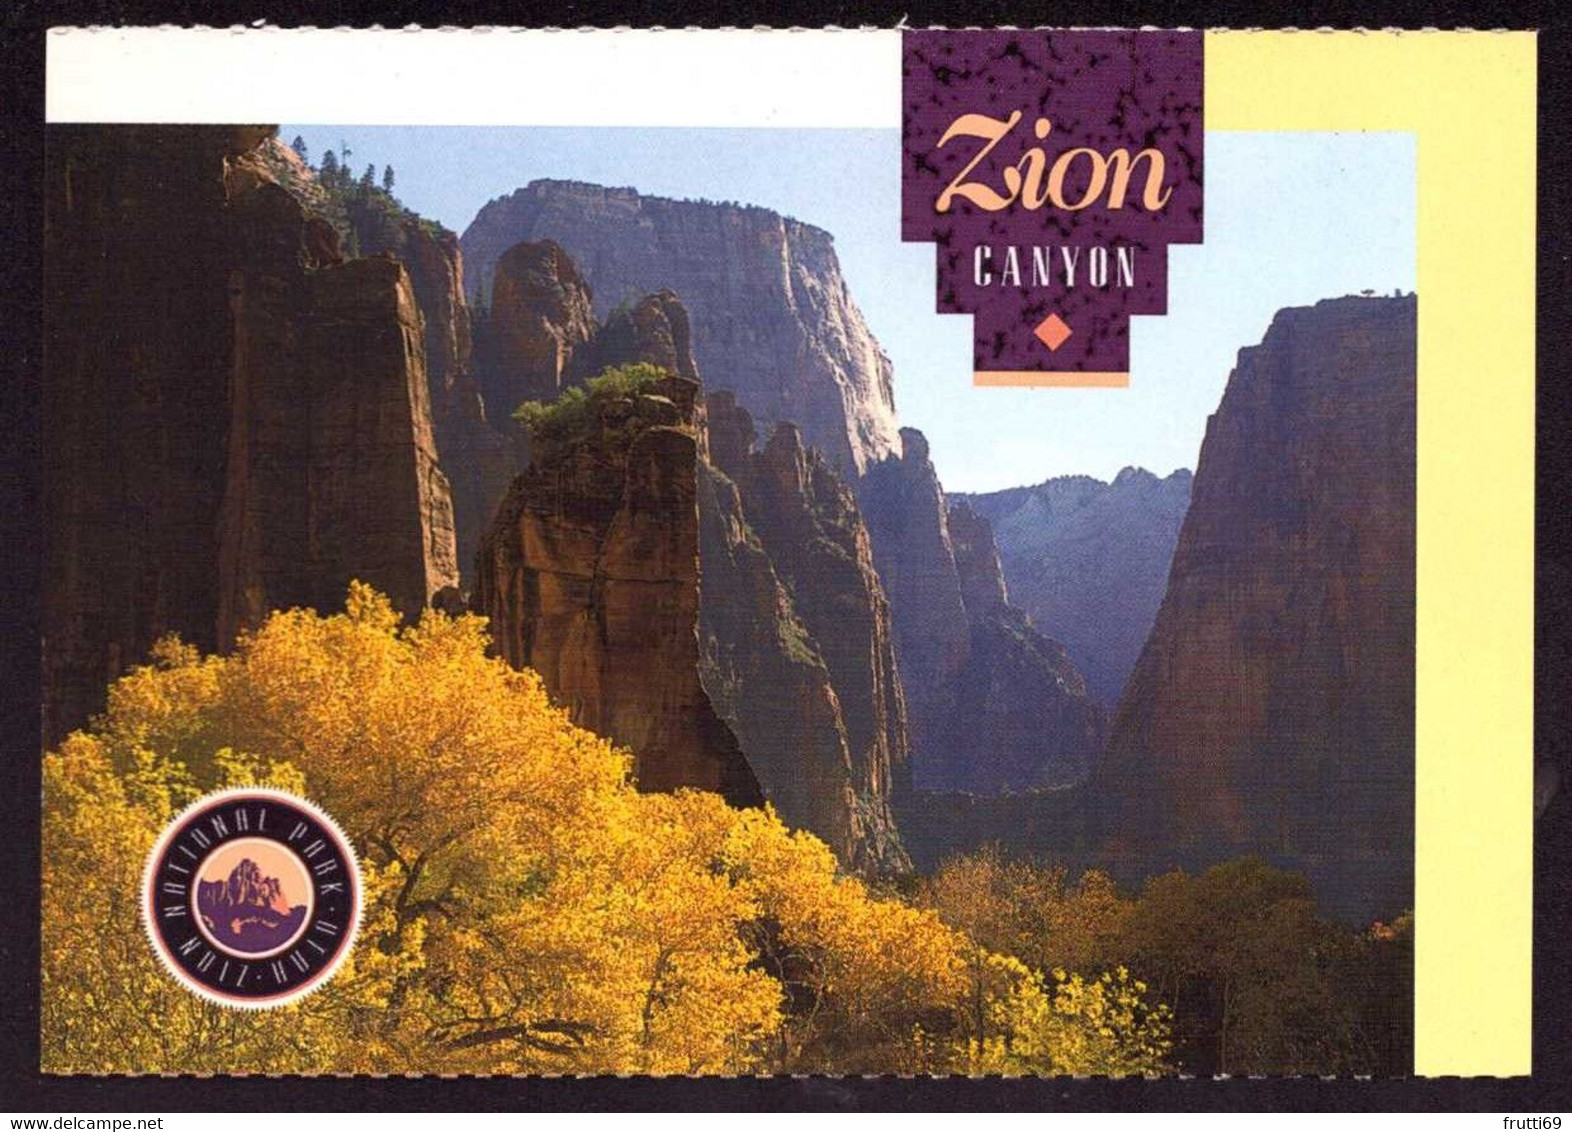 AK 002752 USA - Utah - Zion National Park - Canyon View - Zion